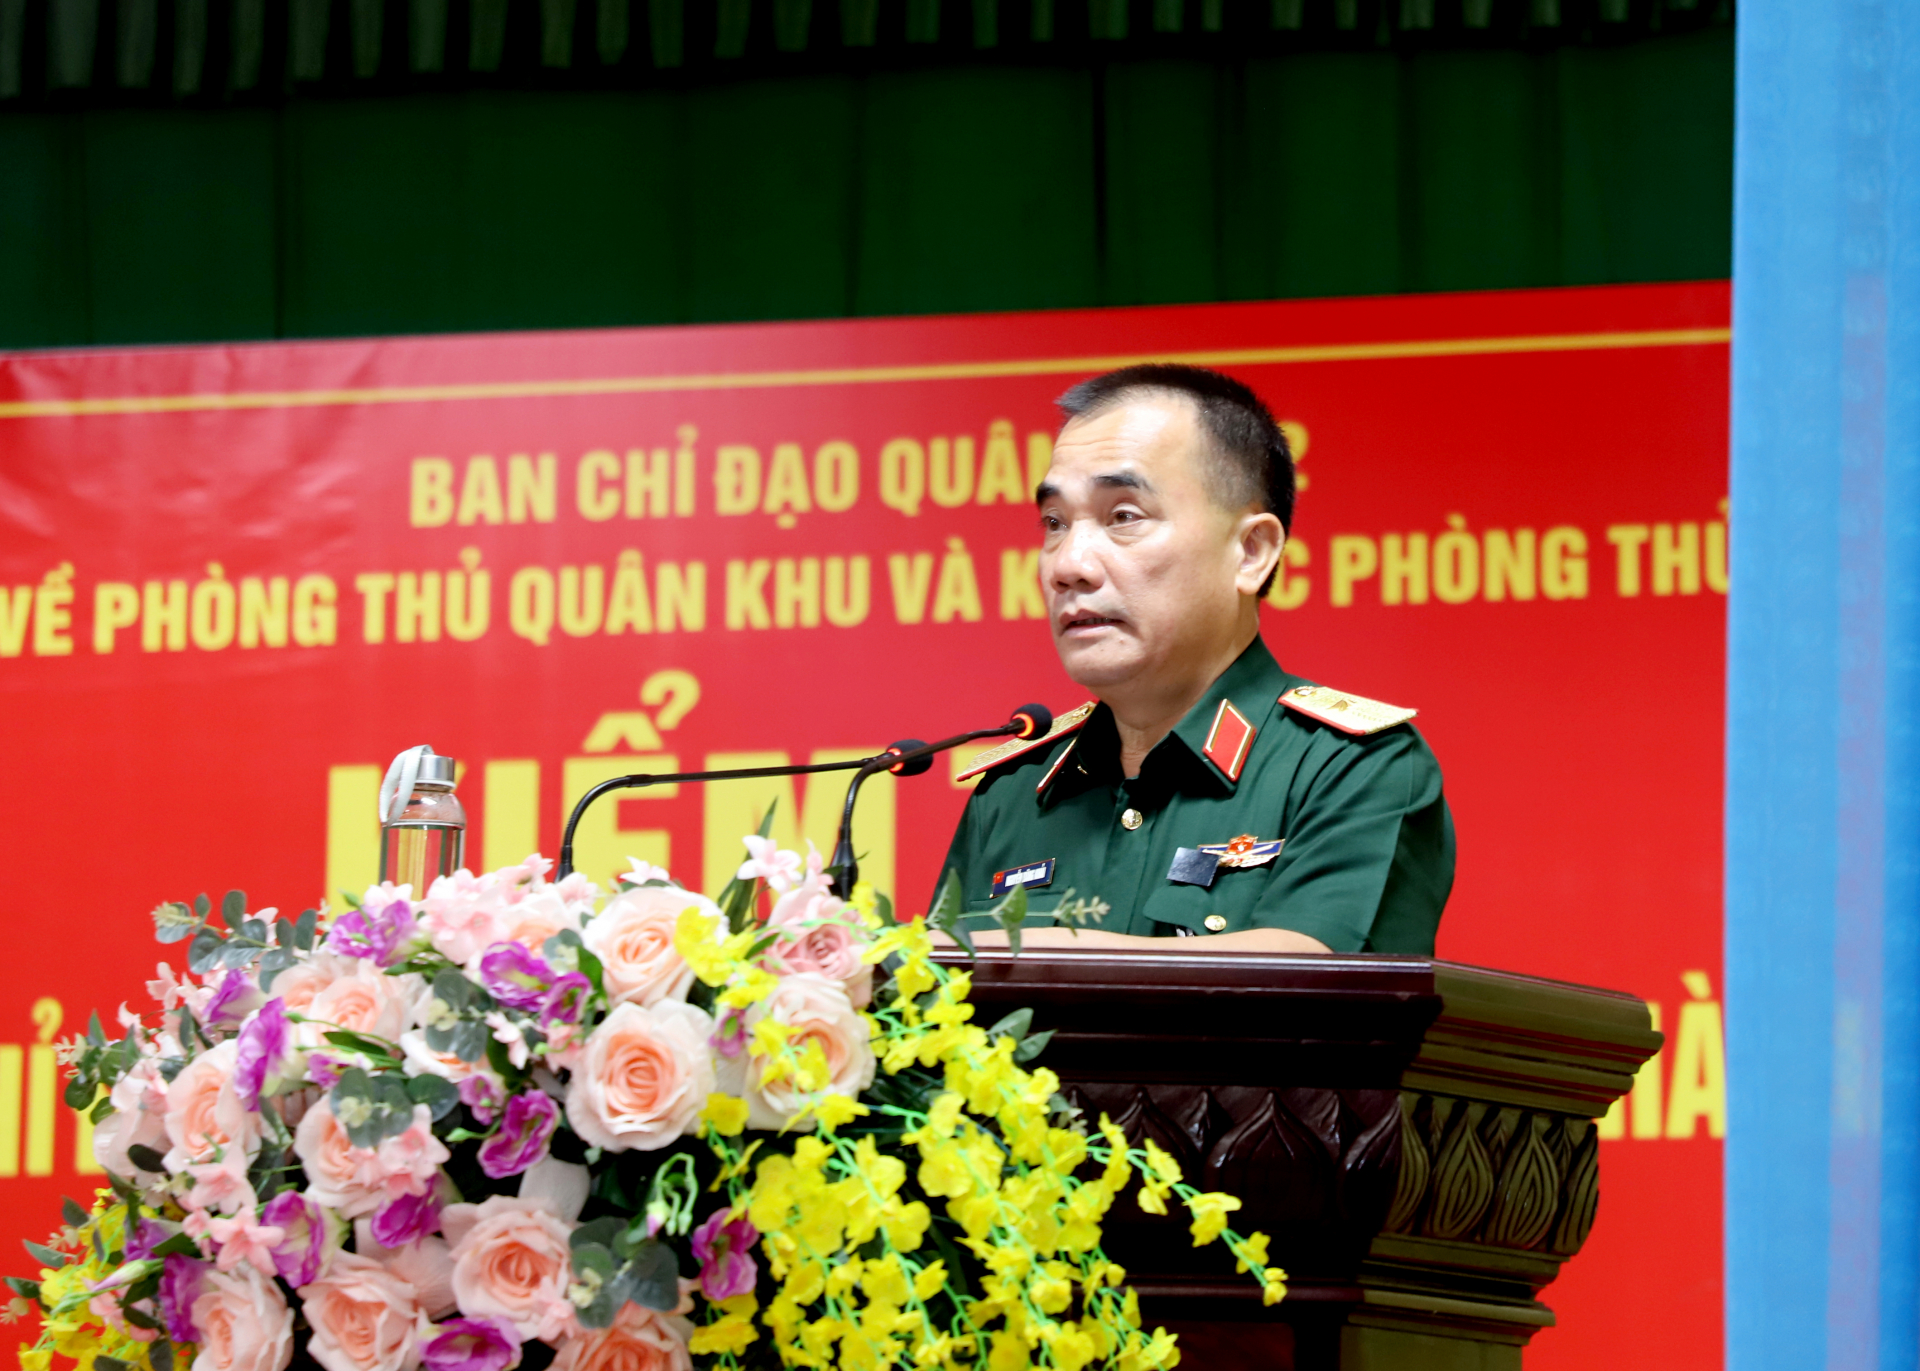 Thiếu tướng Nguyễn Đăng Khải, Phó Tư lệnh - Tham mưu trưởng quân khu phát biểu tại hội nghị.